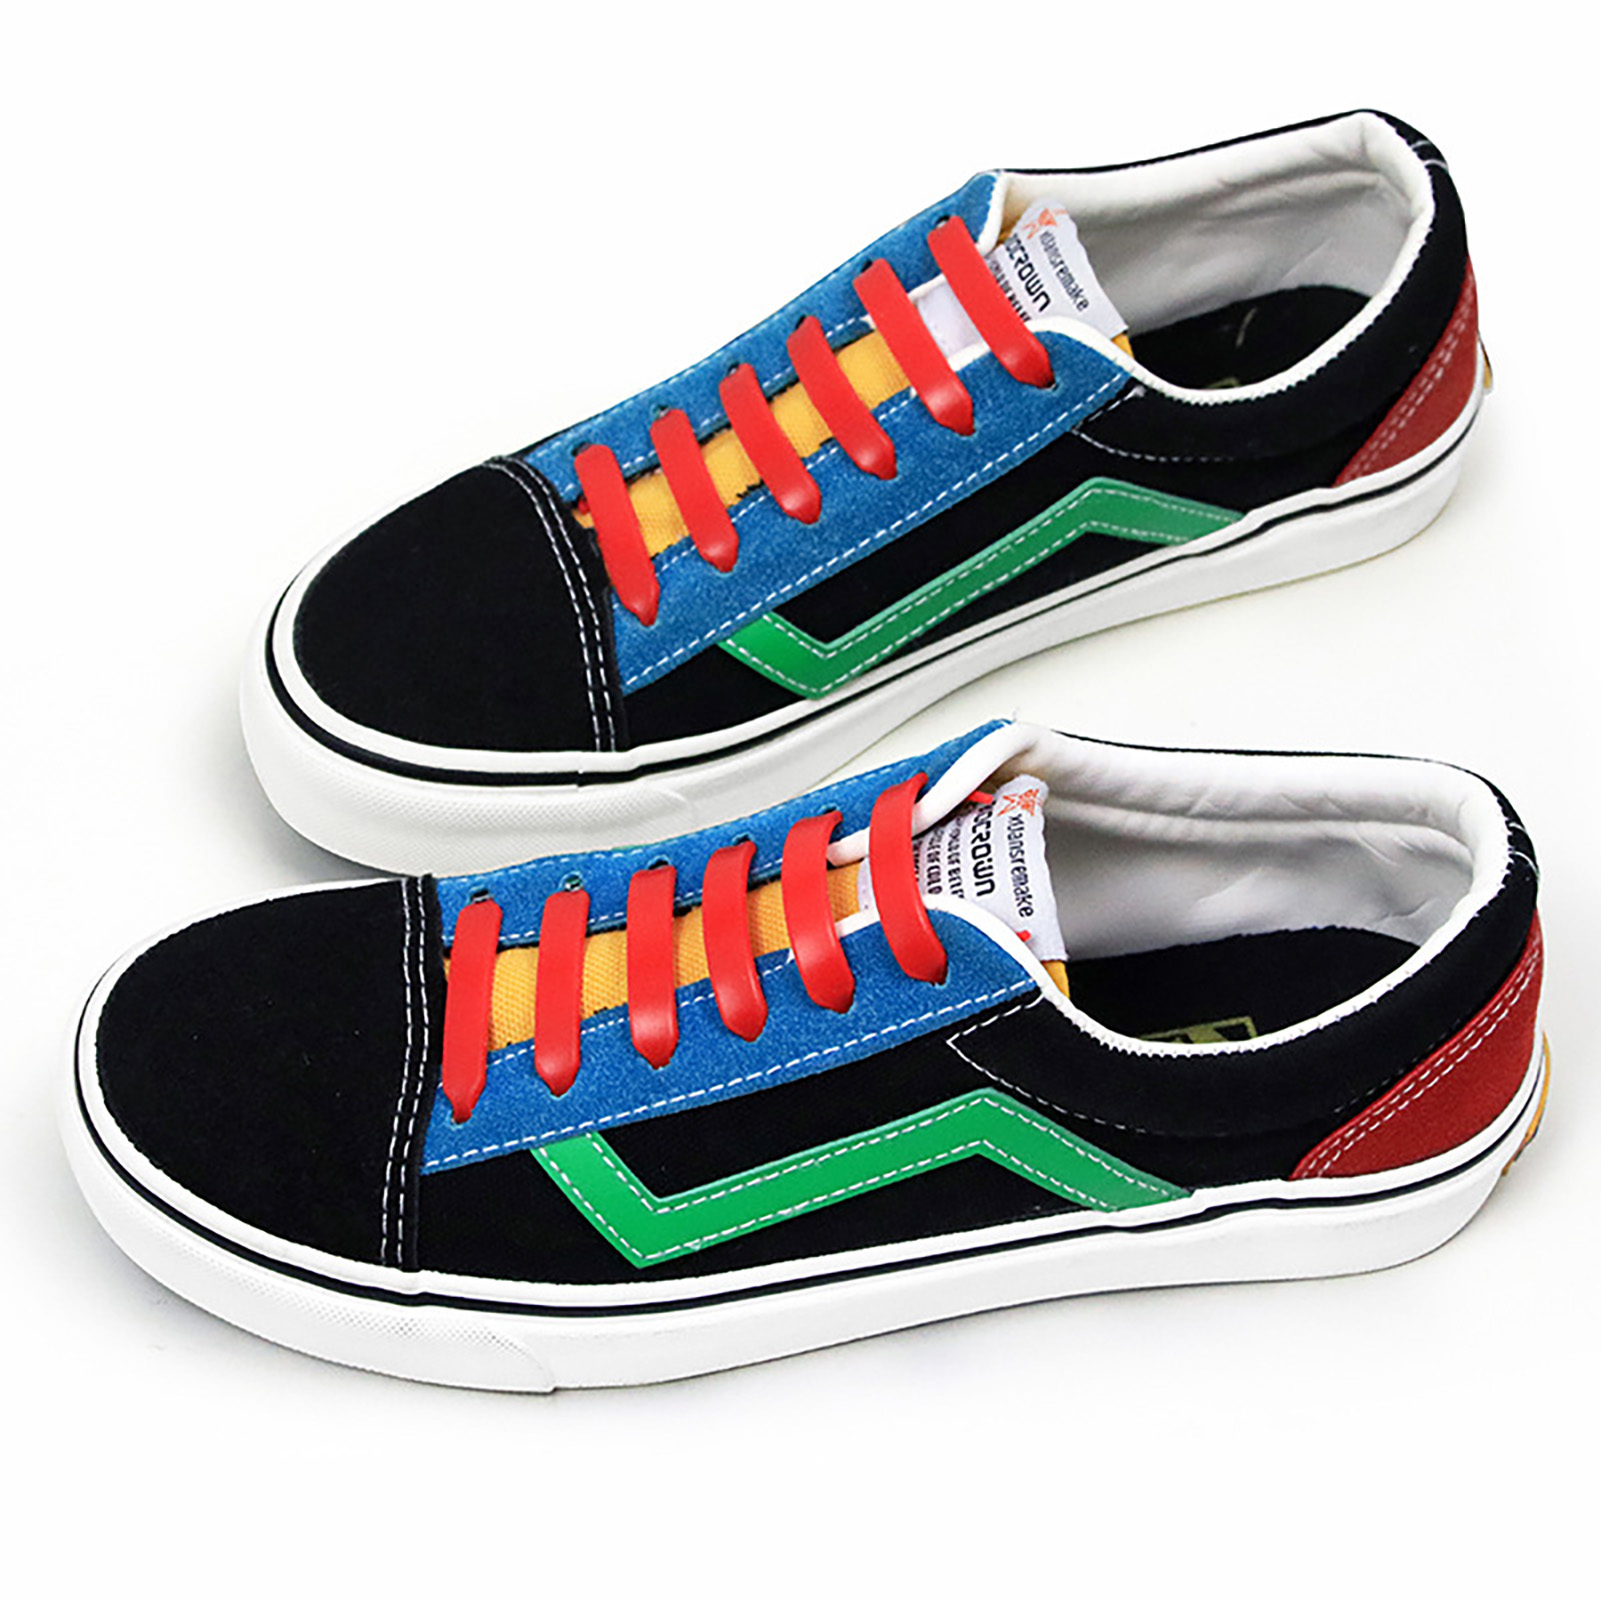 Ghjfyhyhj 12 cái dây giày Silicone đàn hồi 8 màu chống thấm nước chịu nhiệt dây giày cho cả người lớn và trẻ em